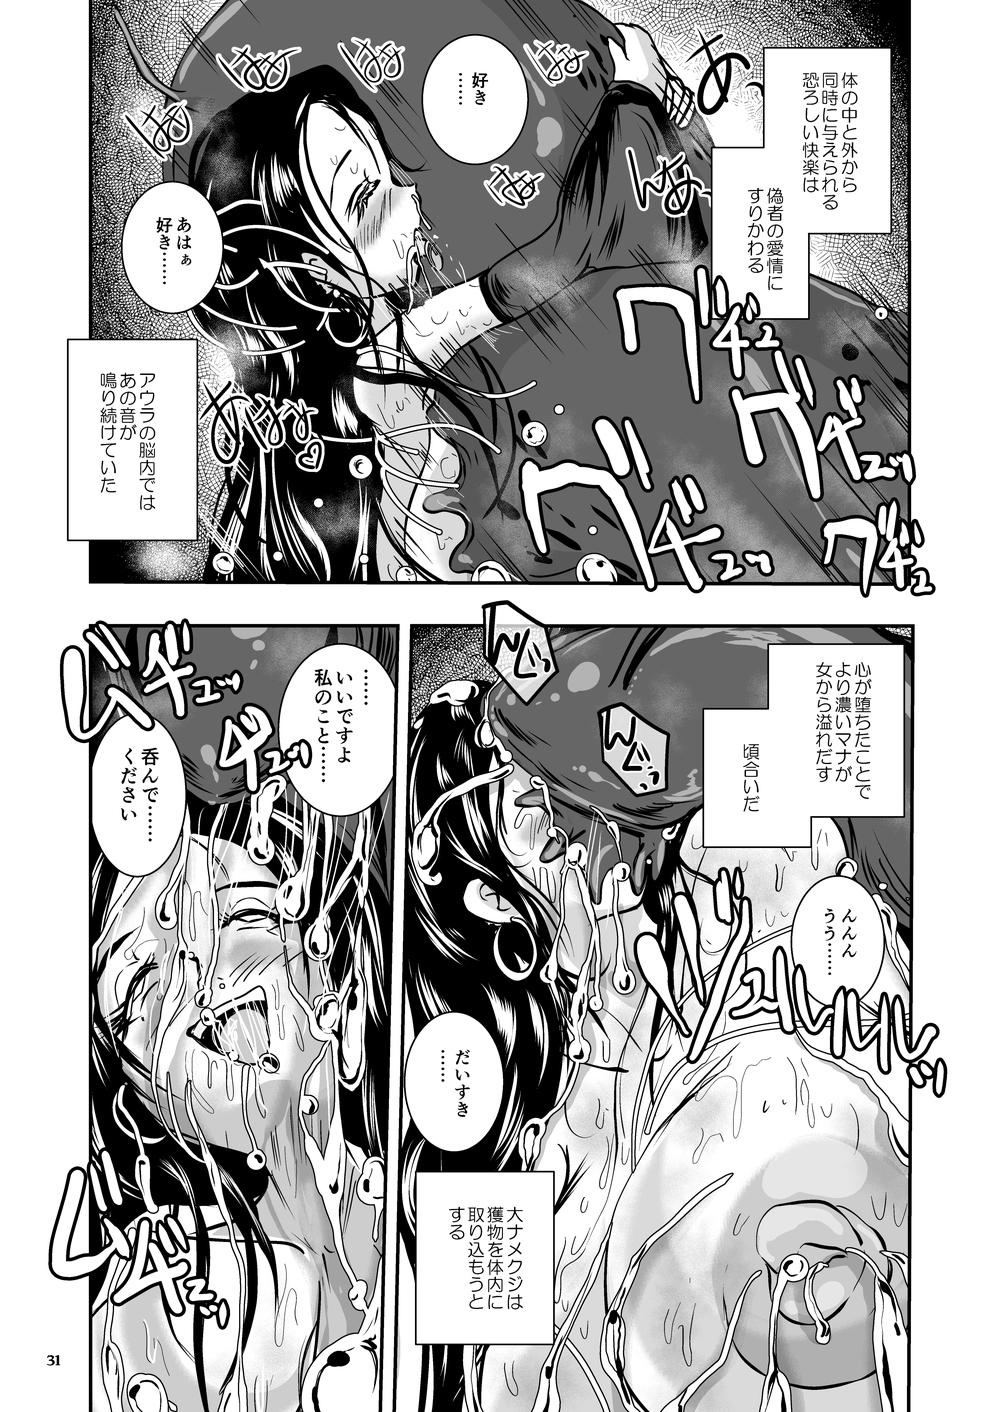 Oonamekuji to Kurokami no Mahoutsukai - Parasitized Giant Slugs V.S. Sorceress of the Black Hair as Aura 77